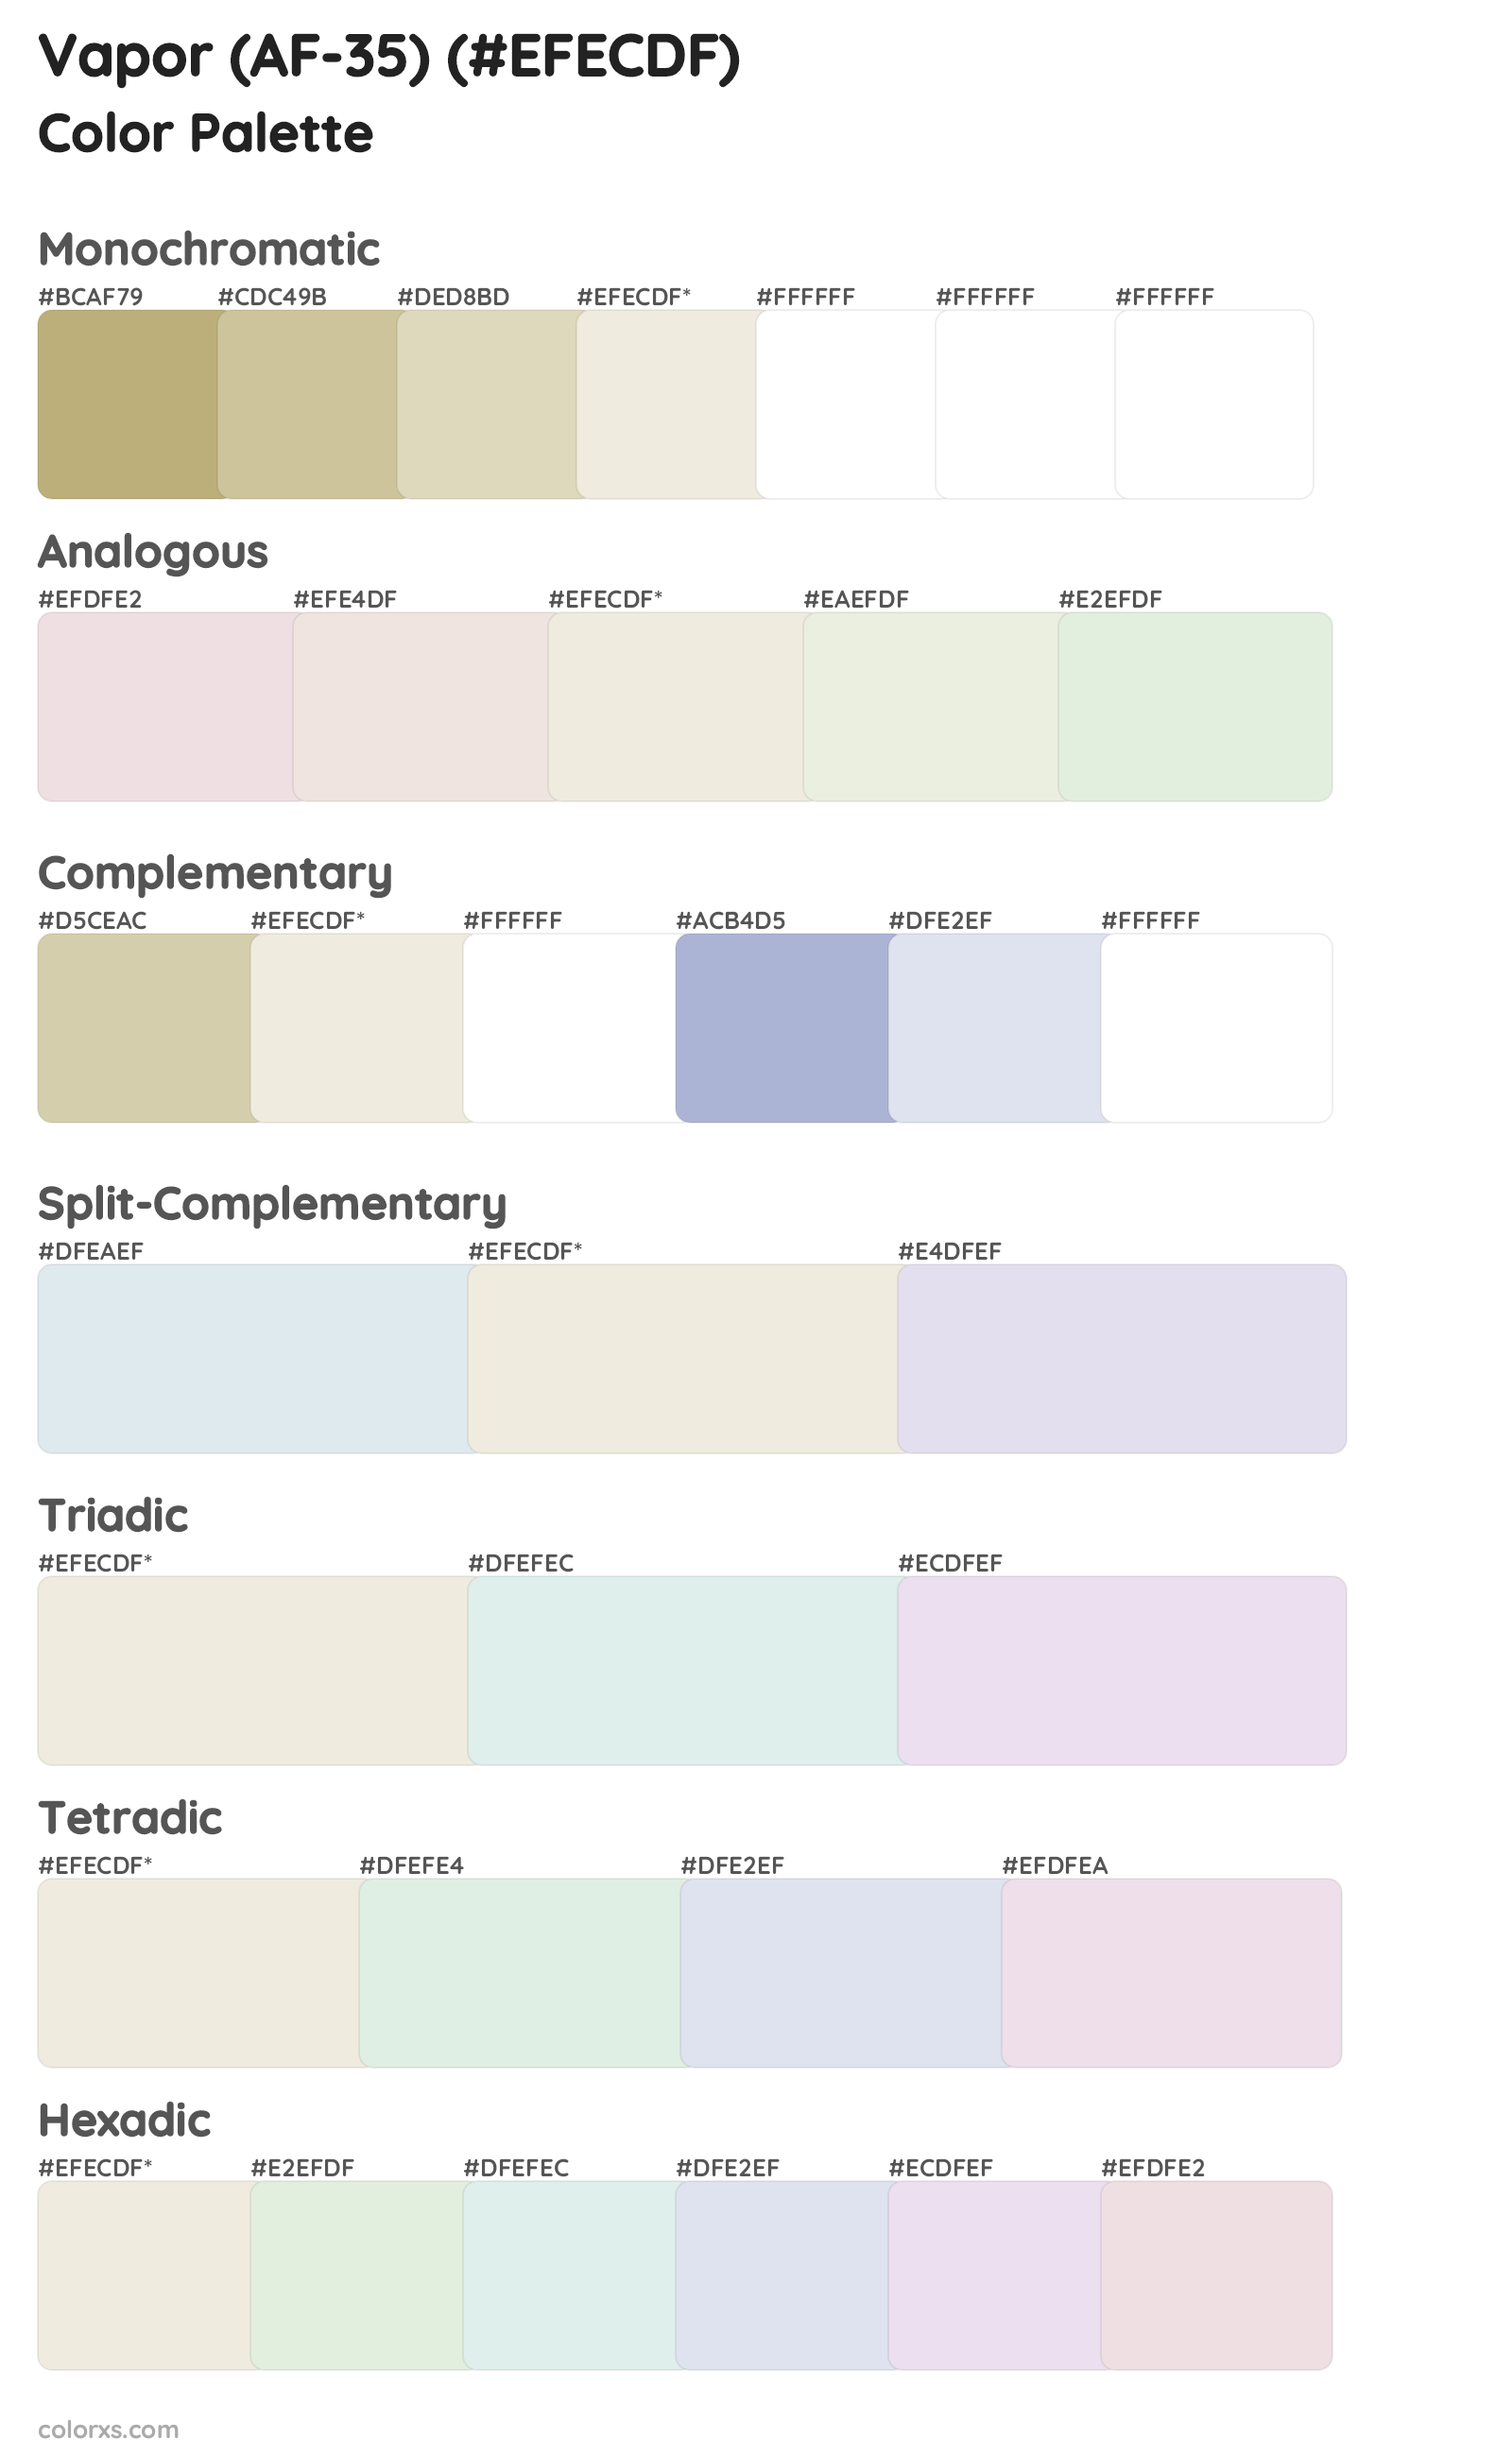 Vapor (AF-35) Color Scheme Palettes